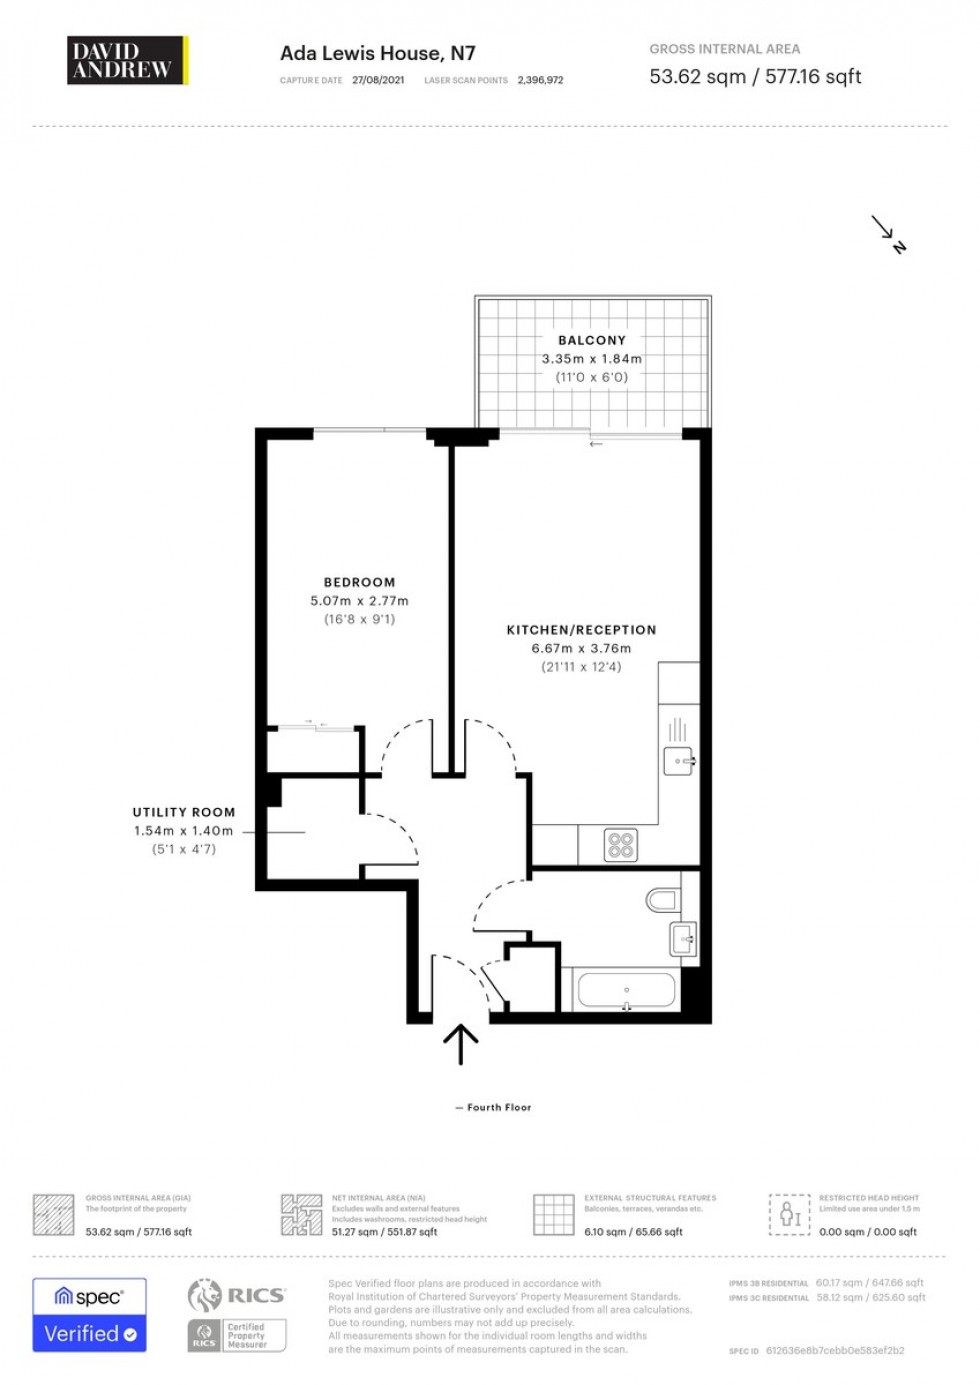 Floorplan for Ada Lewis House, N7 0LD